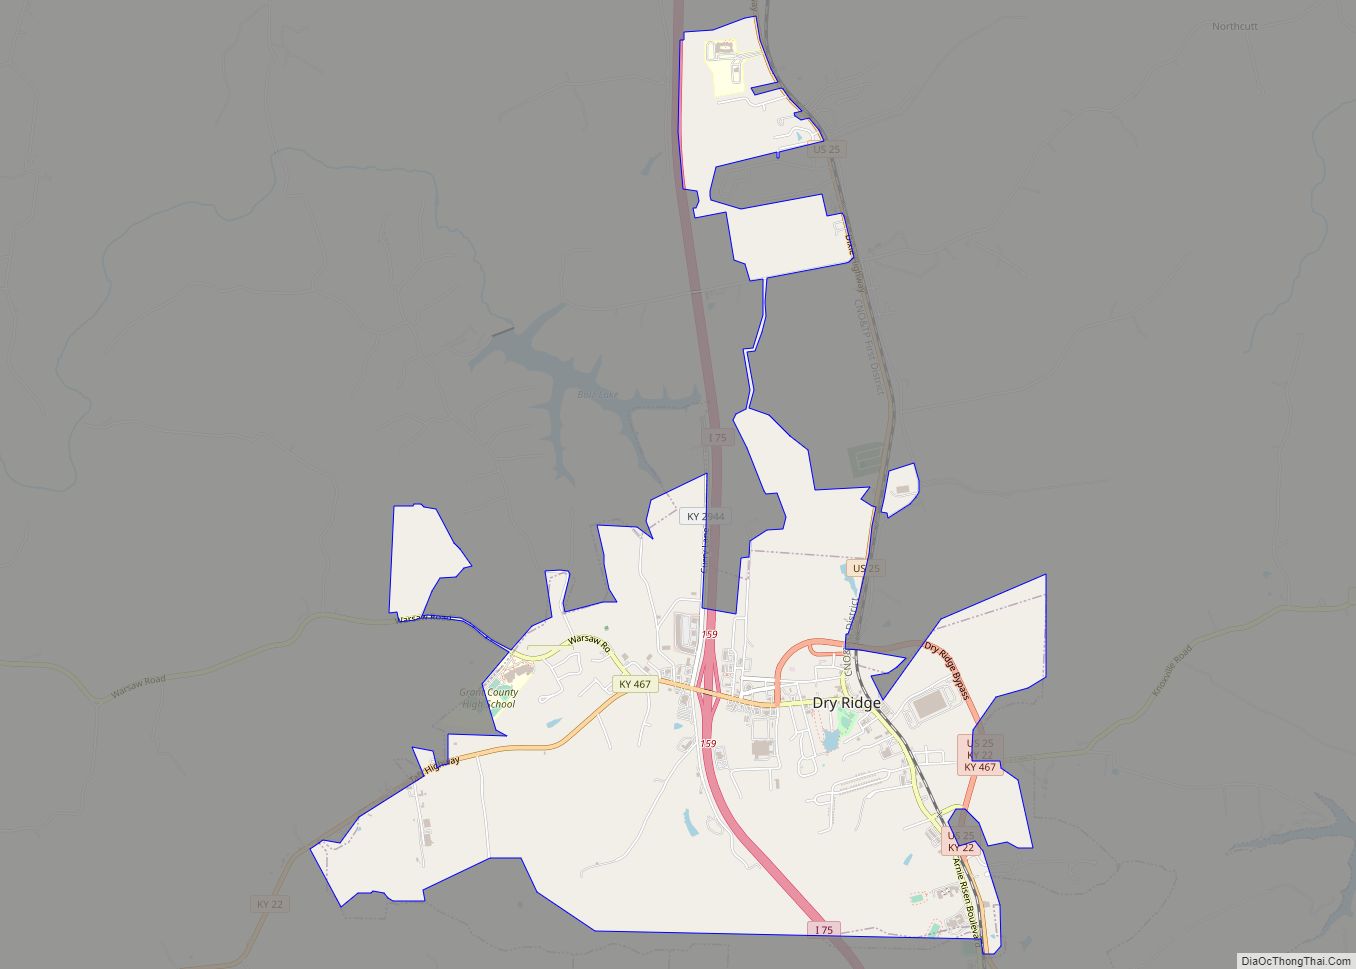 Map of Dry Ridge city